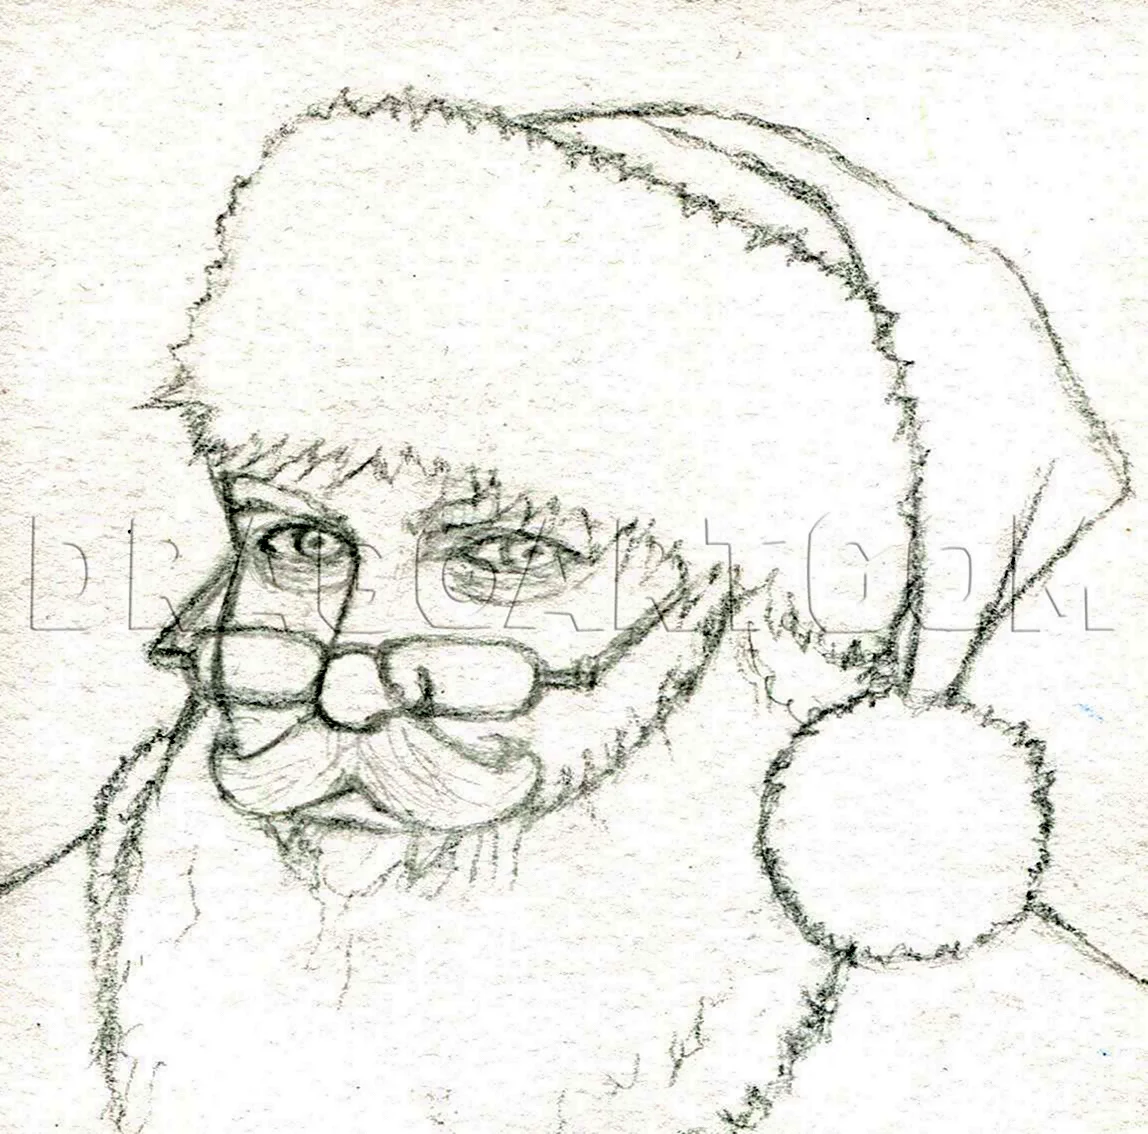 Как нарисовать Деда Мороза красиво как художник